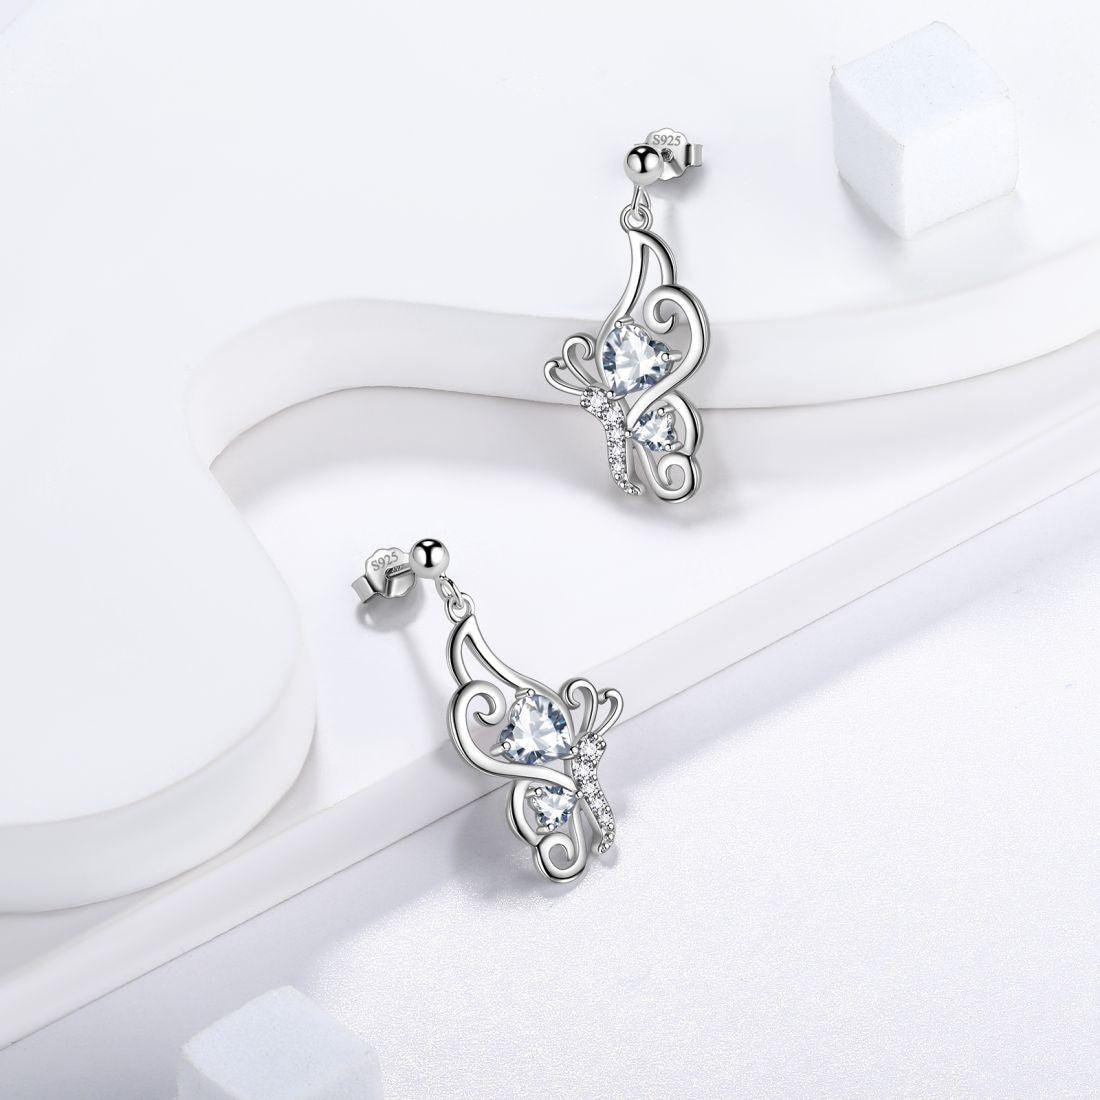 Butterfly Birthstone April Diamond Earrings Sterling Silver - Earrings - Aurora Tears